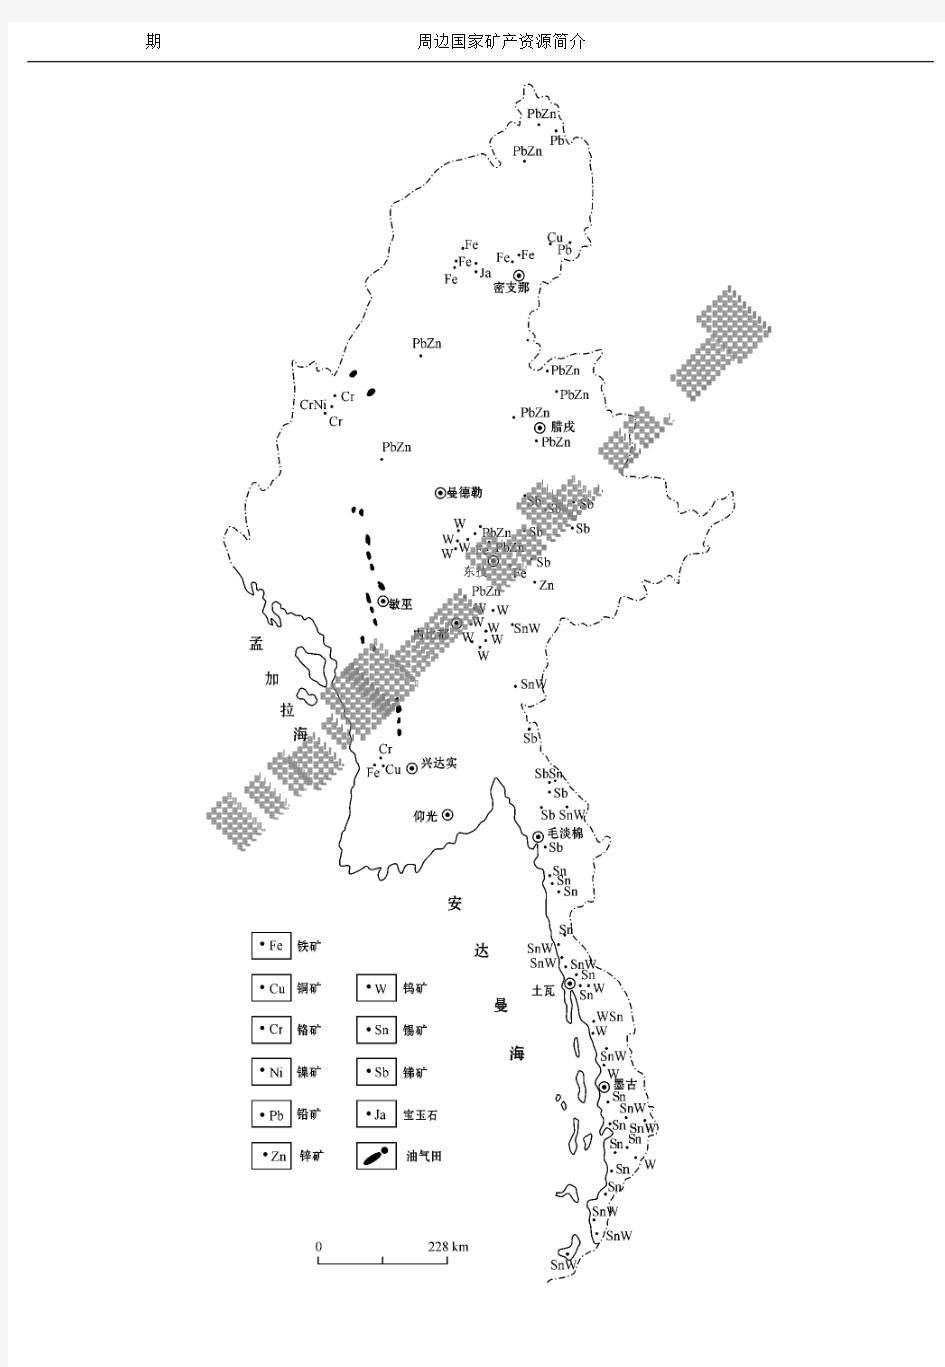 缅甸区域成矿地质特征及其矿产资源(二)